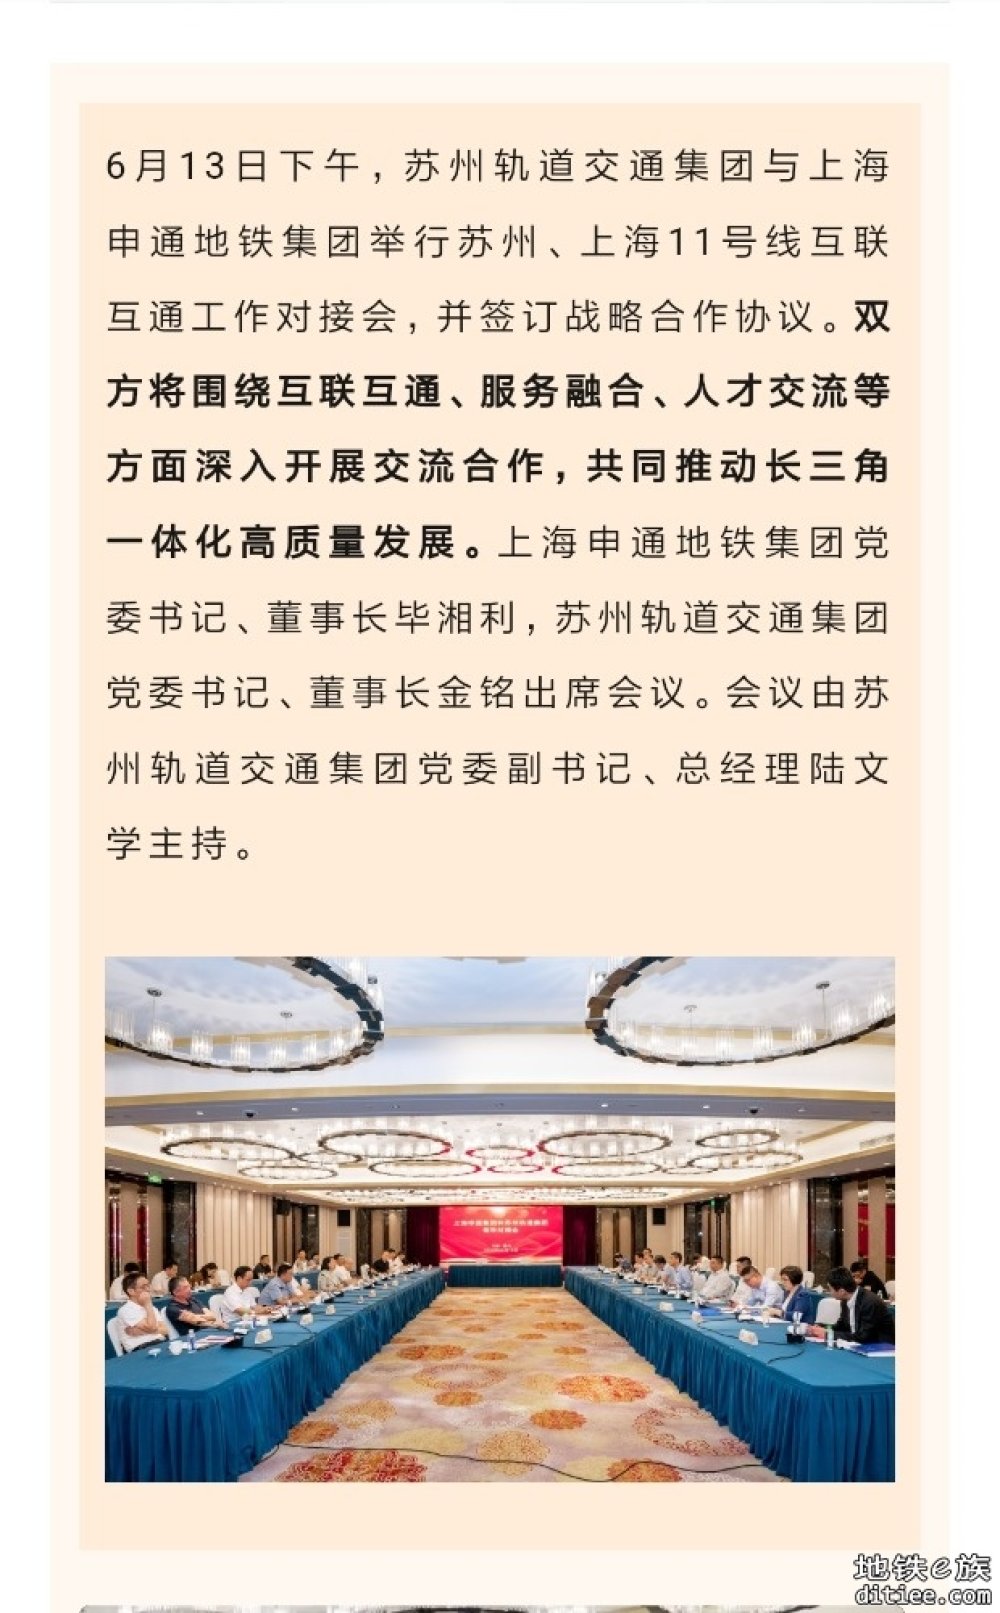 苏州轨道交通集团与上海申通地铁集团签署战略合作协议